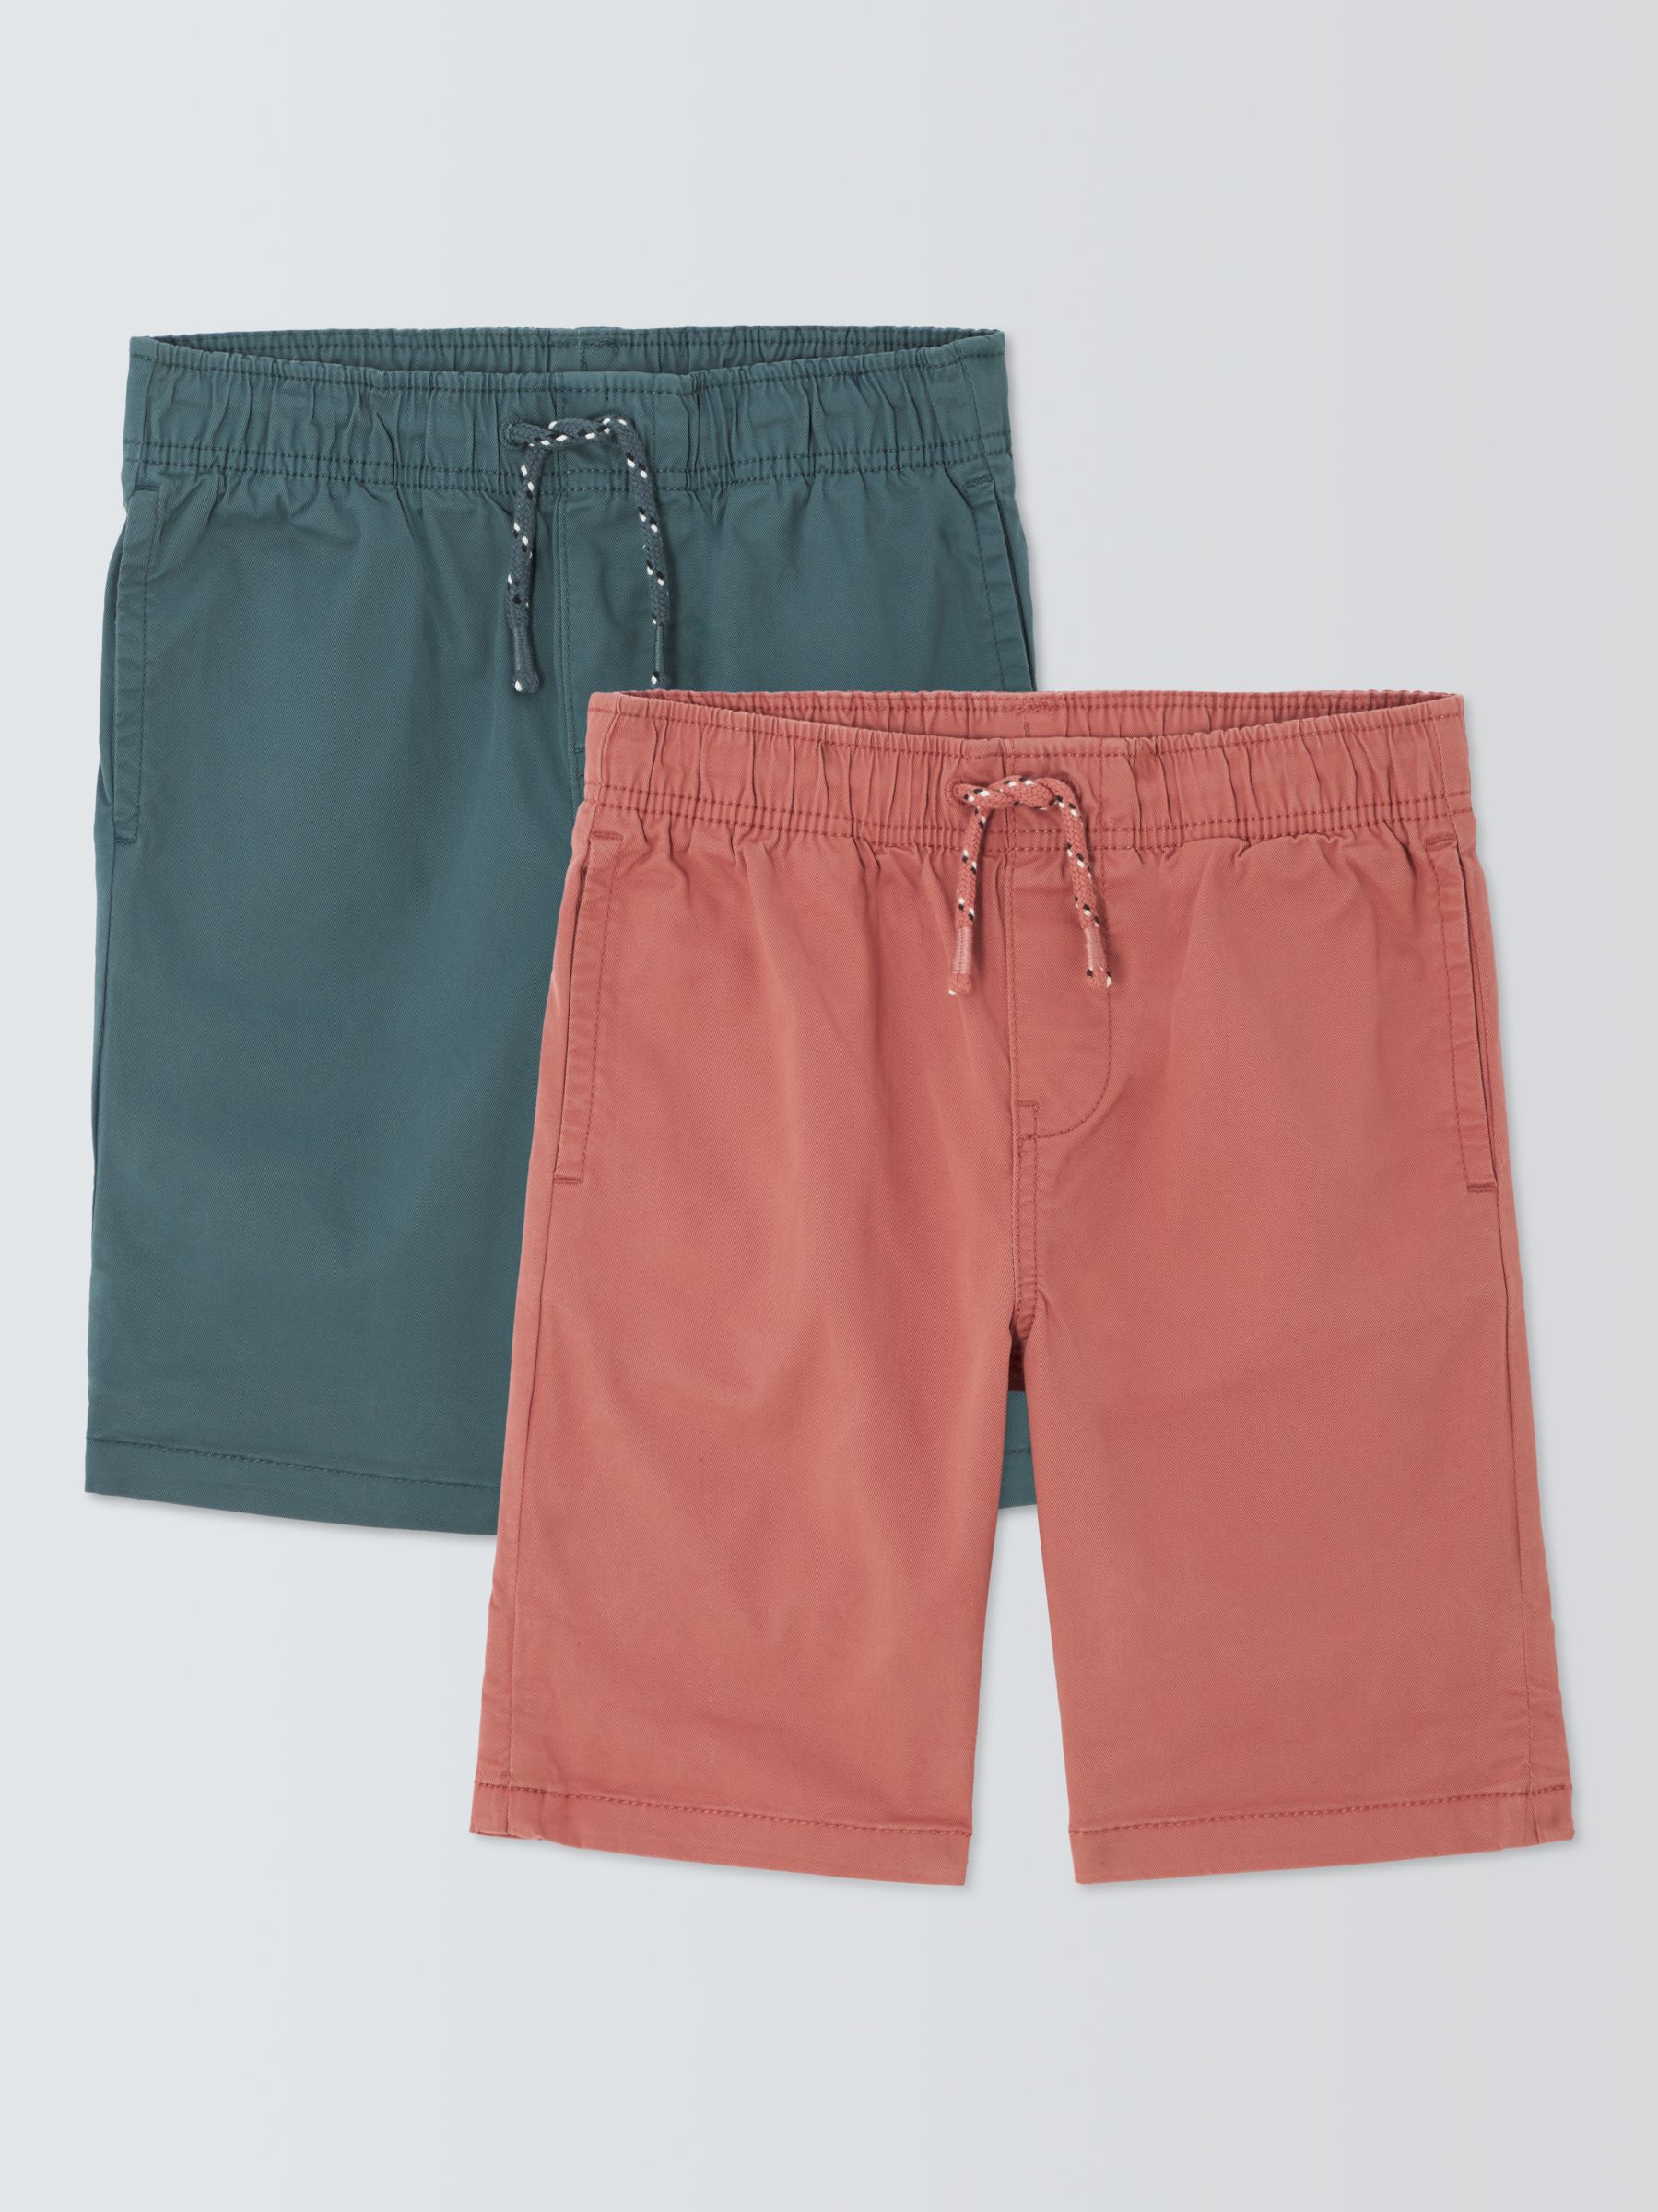 Buy John Lewis Kids' Chino Shorts, Pack of 2, Multi Online at johnlewis.com